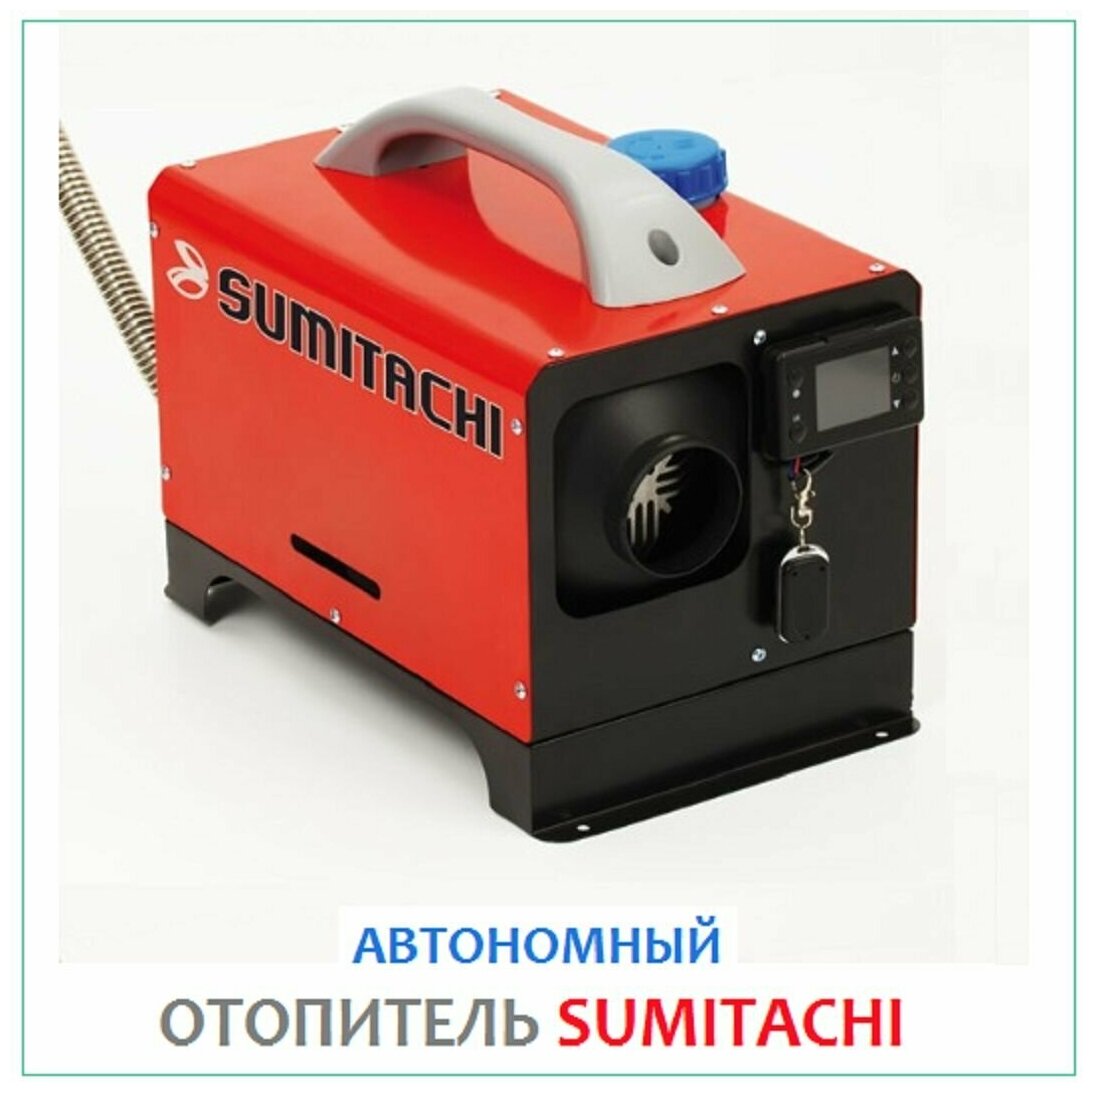 Автономный дизельный отопитель Sumitachi 12 v (обогреватель сухой фен)